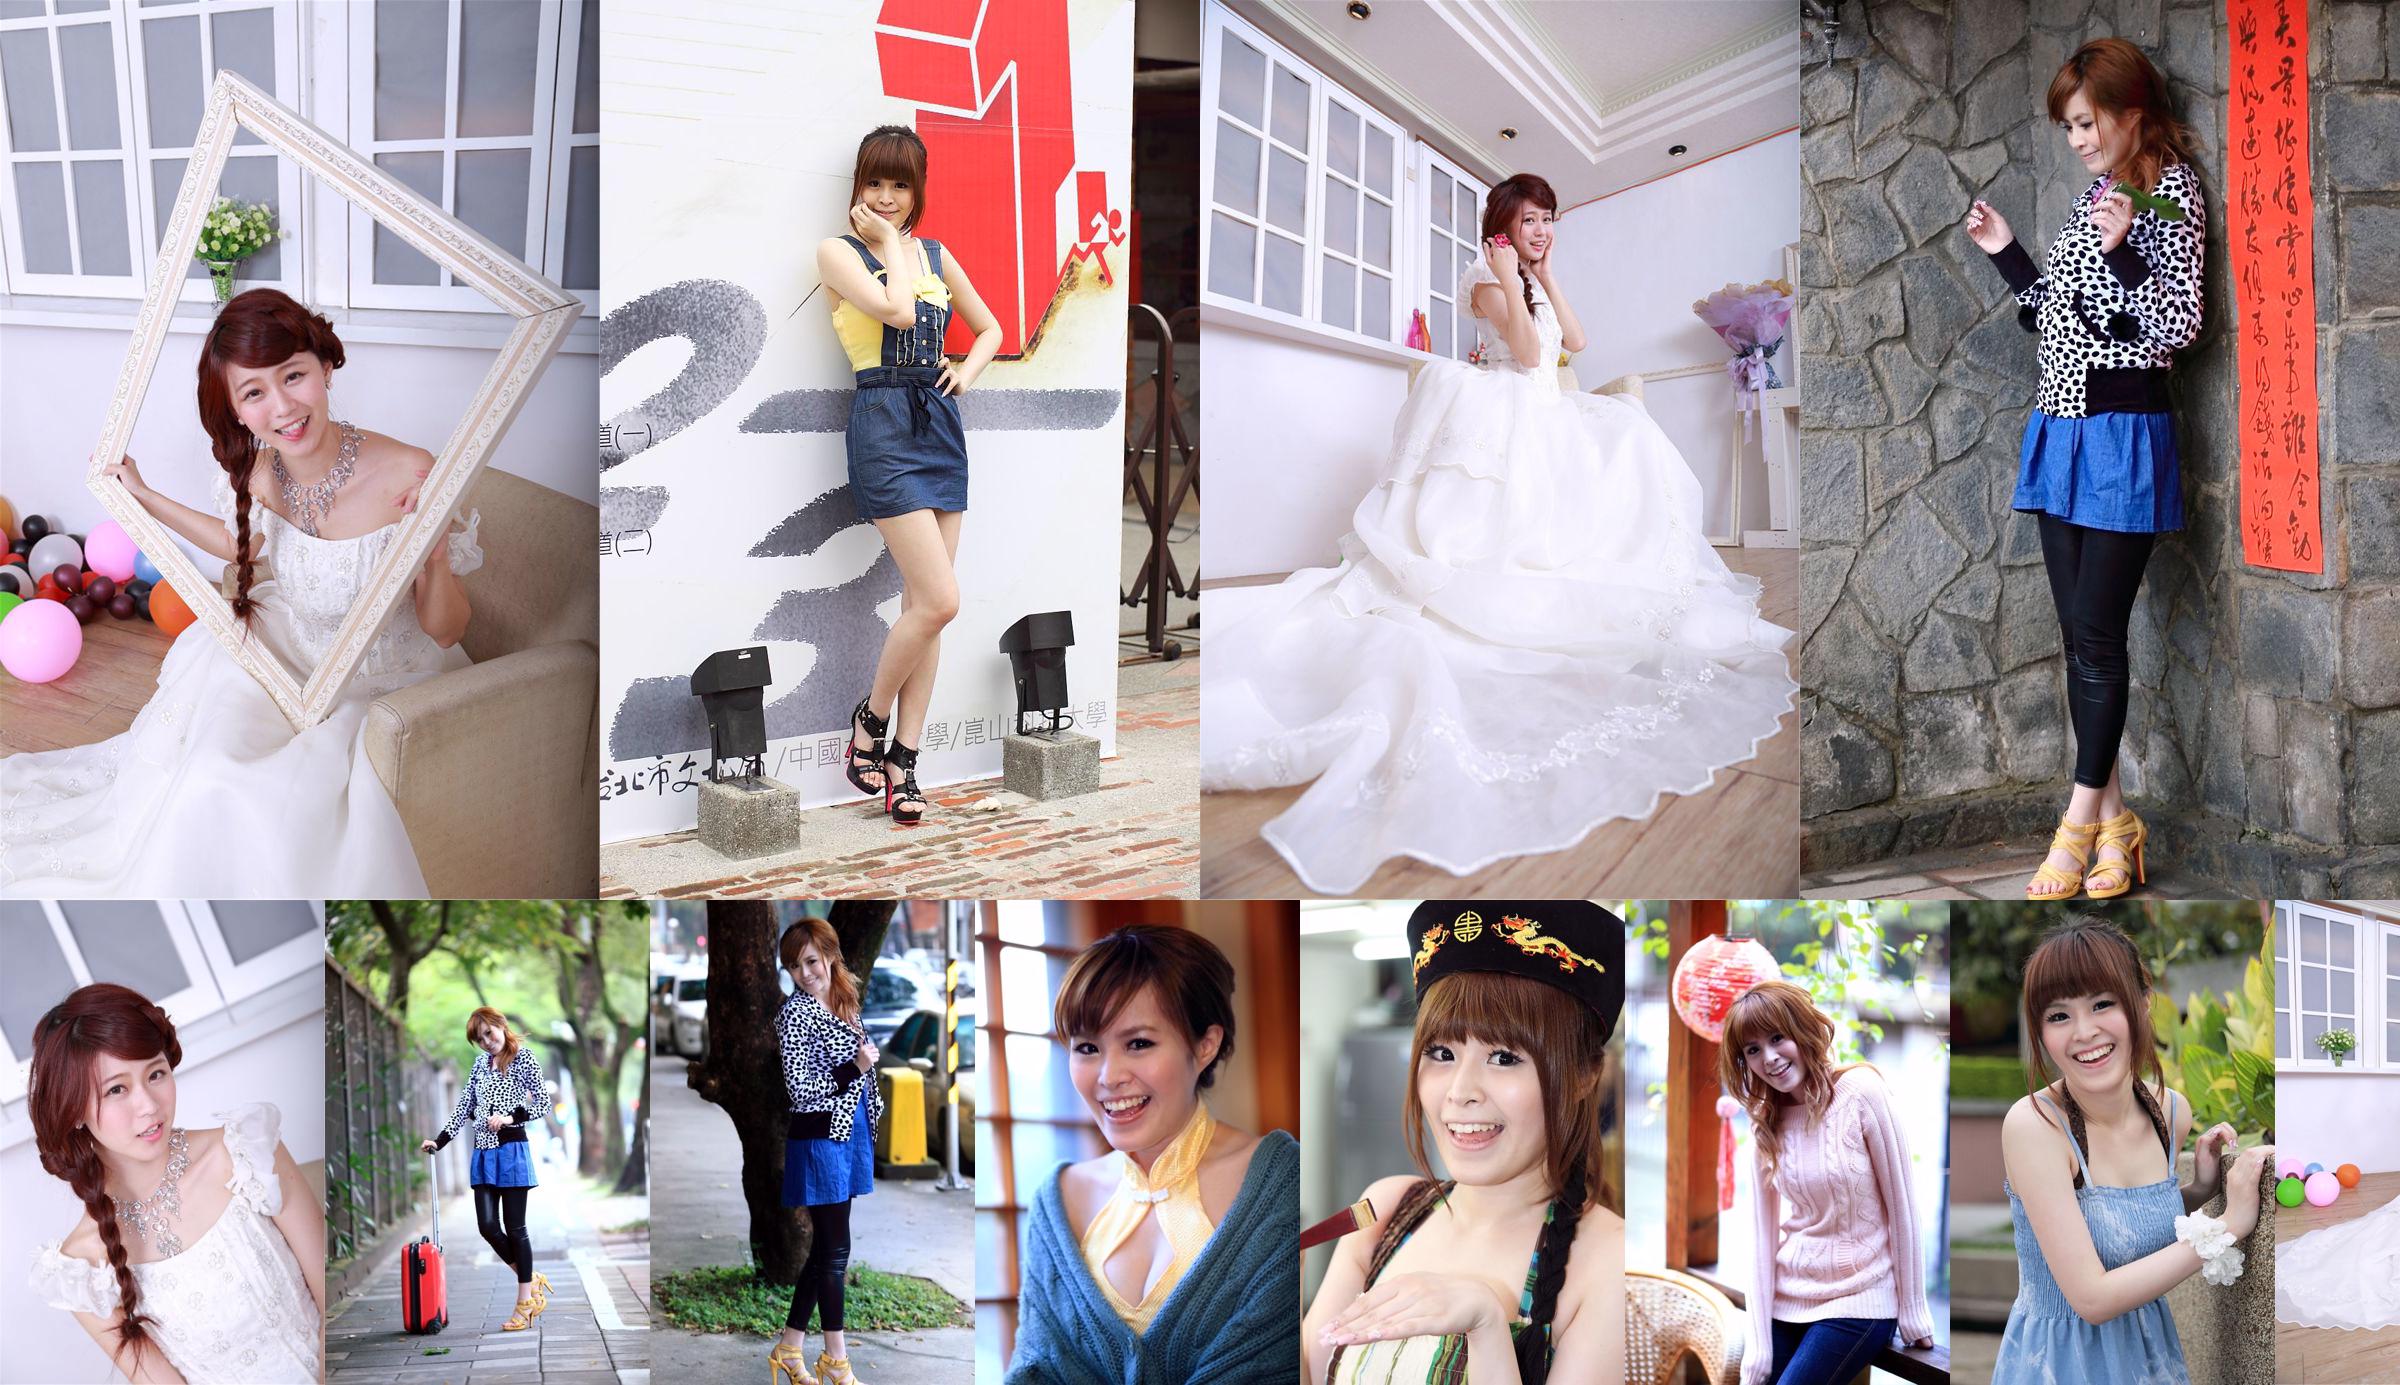 Taiwan's innocent girl Bai Bai/Li Yixuan "Mechanical and Electrical Girls' Wedding Studio Shooting" No.90704b Page 1